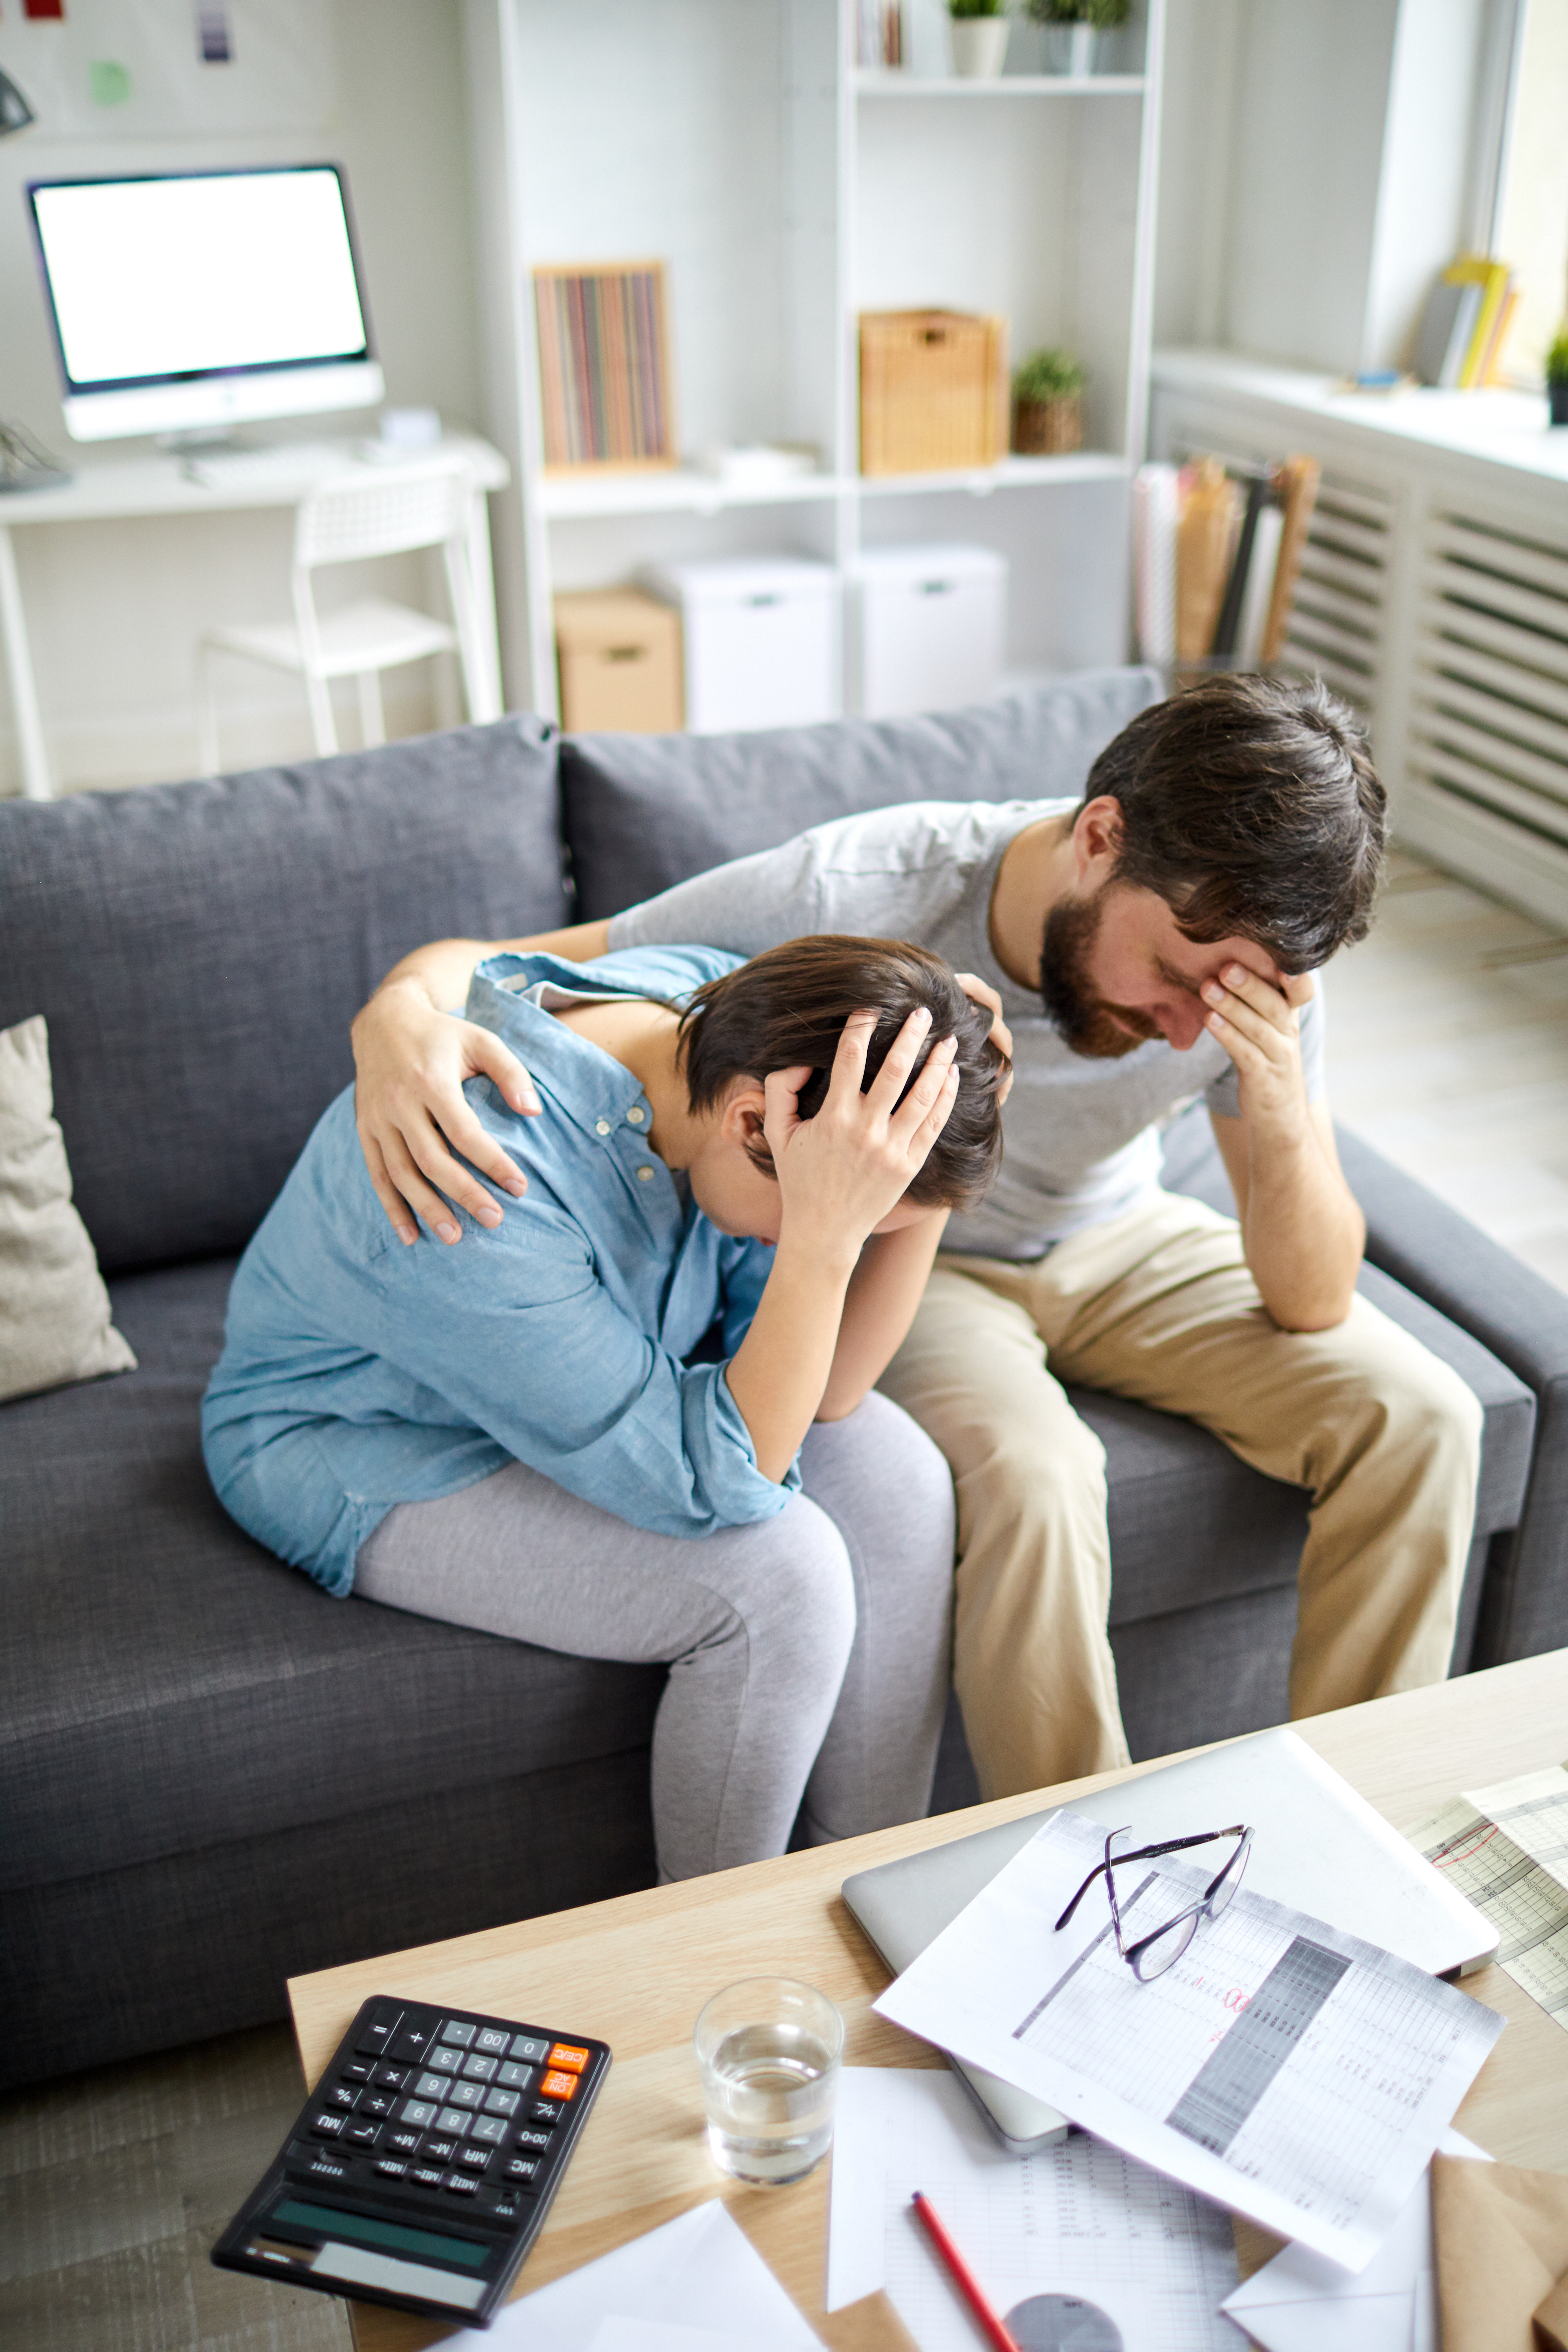 Verzweifelter Mann legt seinen Arm um eine verzweifelte Frau | Quelle: Shutterstock